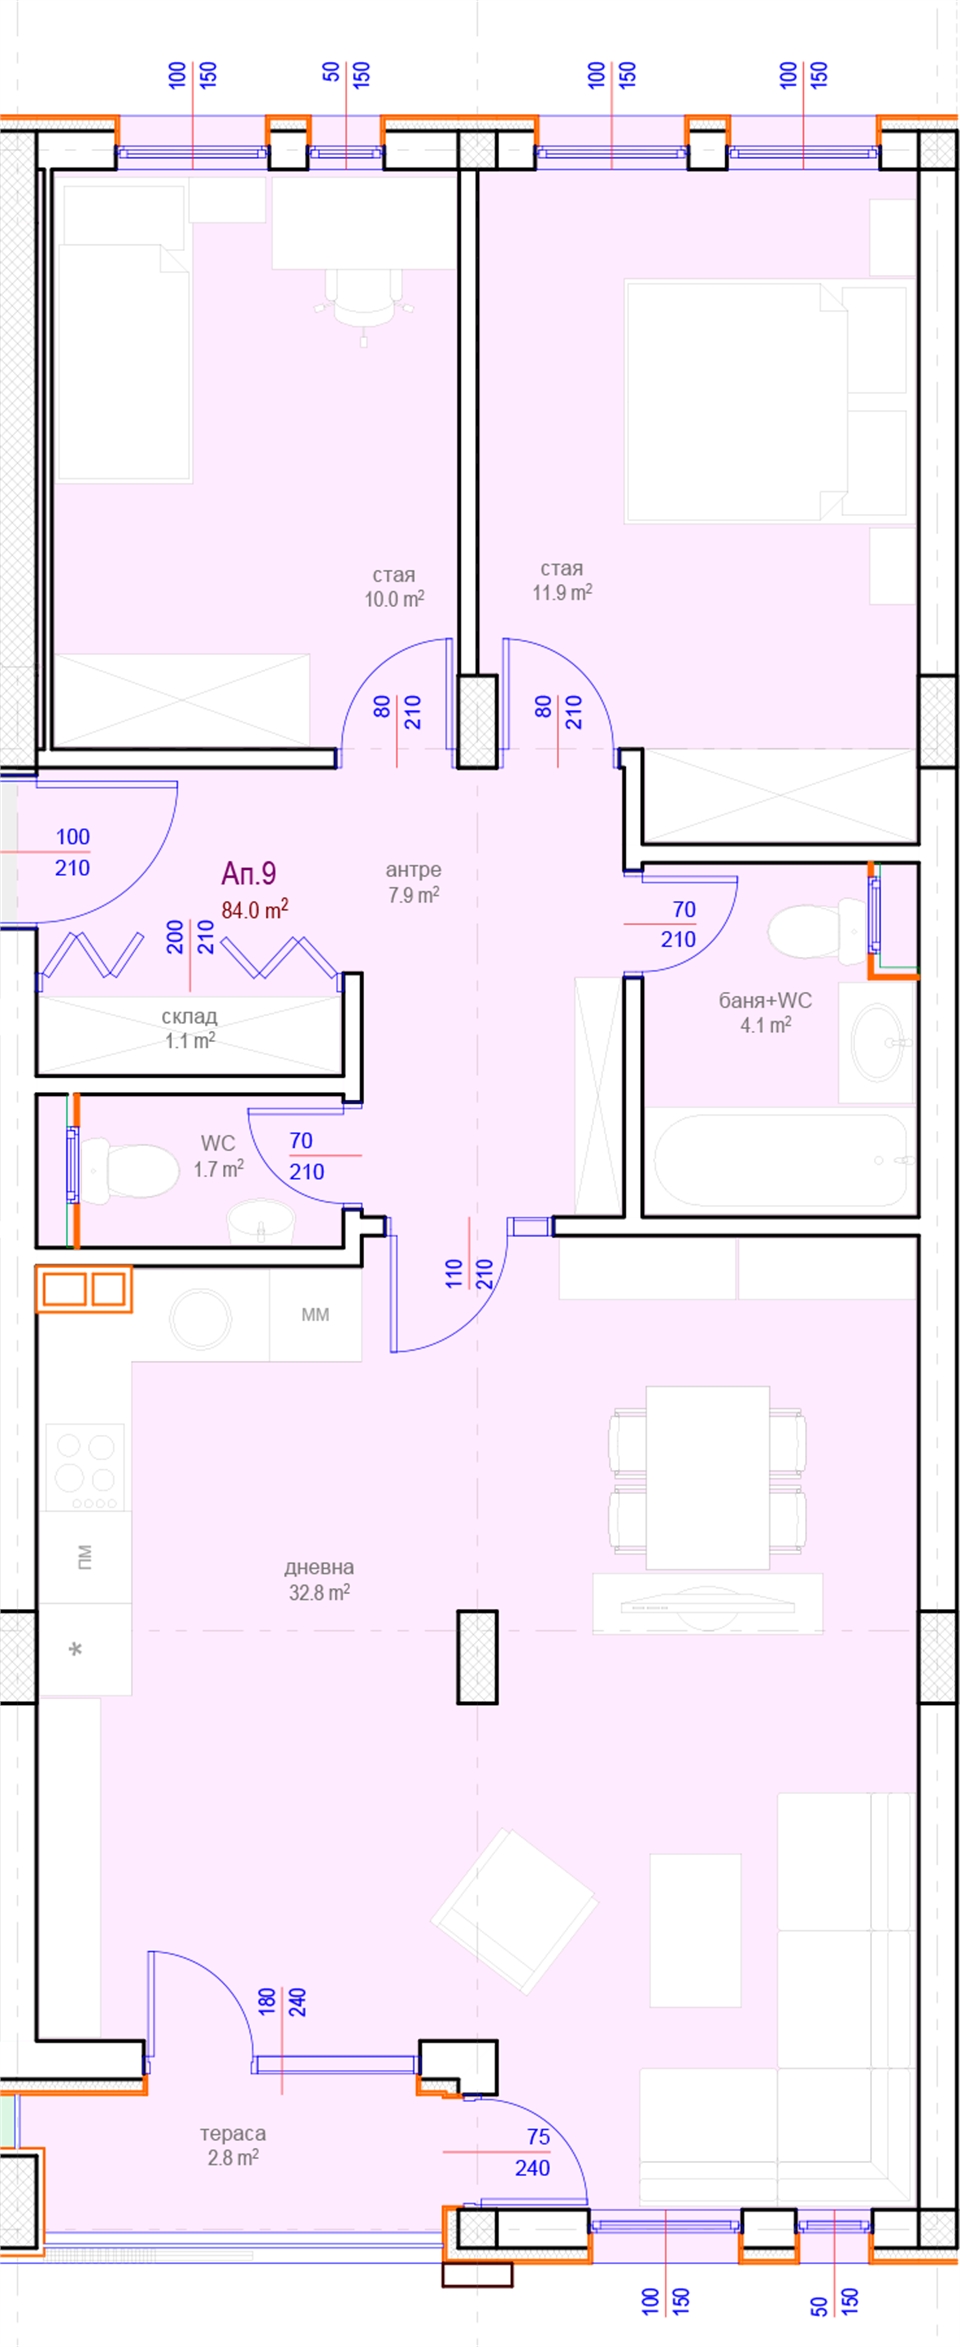 Апартамент № 9, Вход А, 3 етаж, Изложение С-Ю